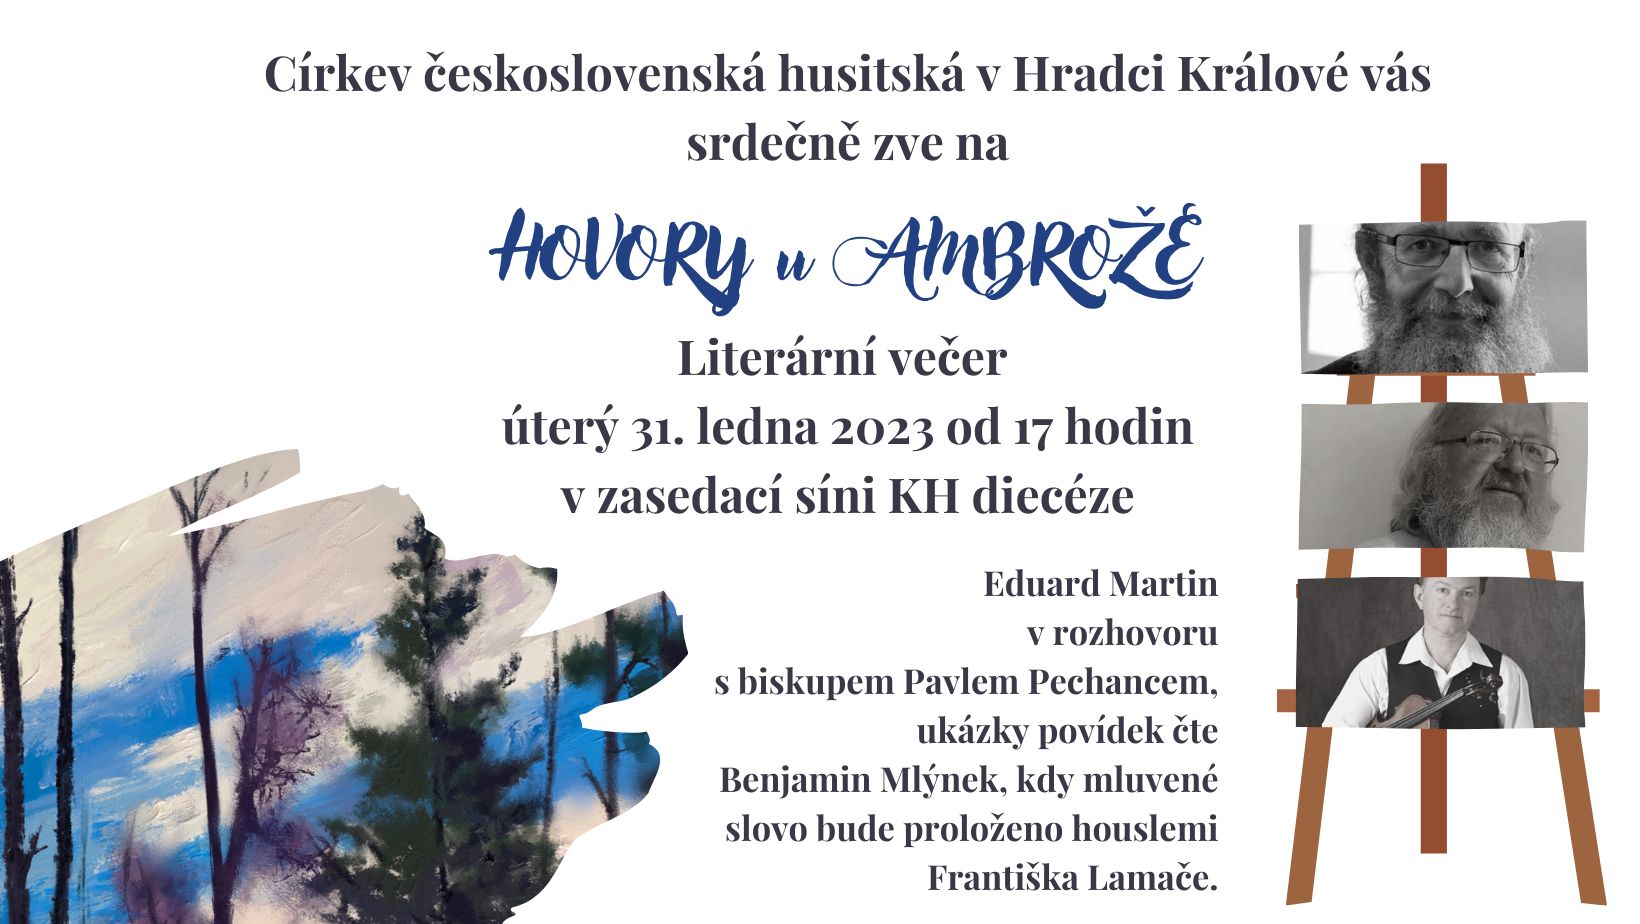 HOVORY U AMBROŽE Literární večer s Eduardem Martinem